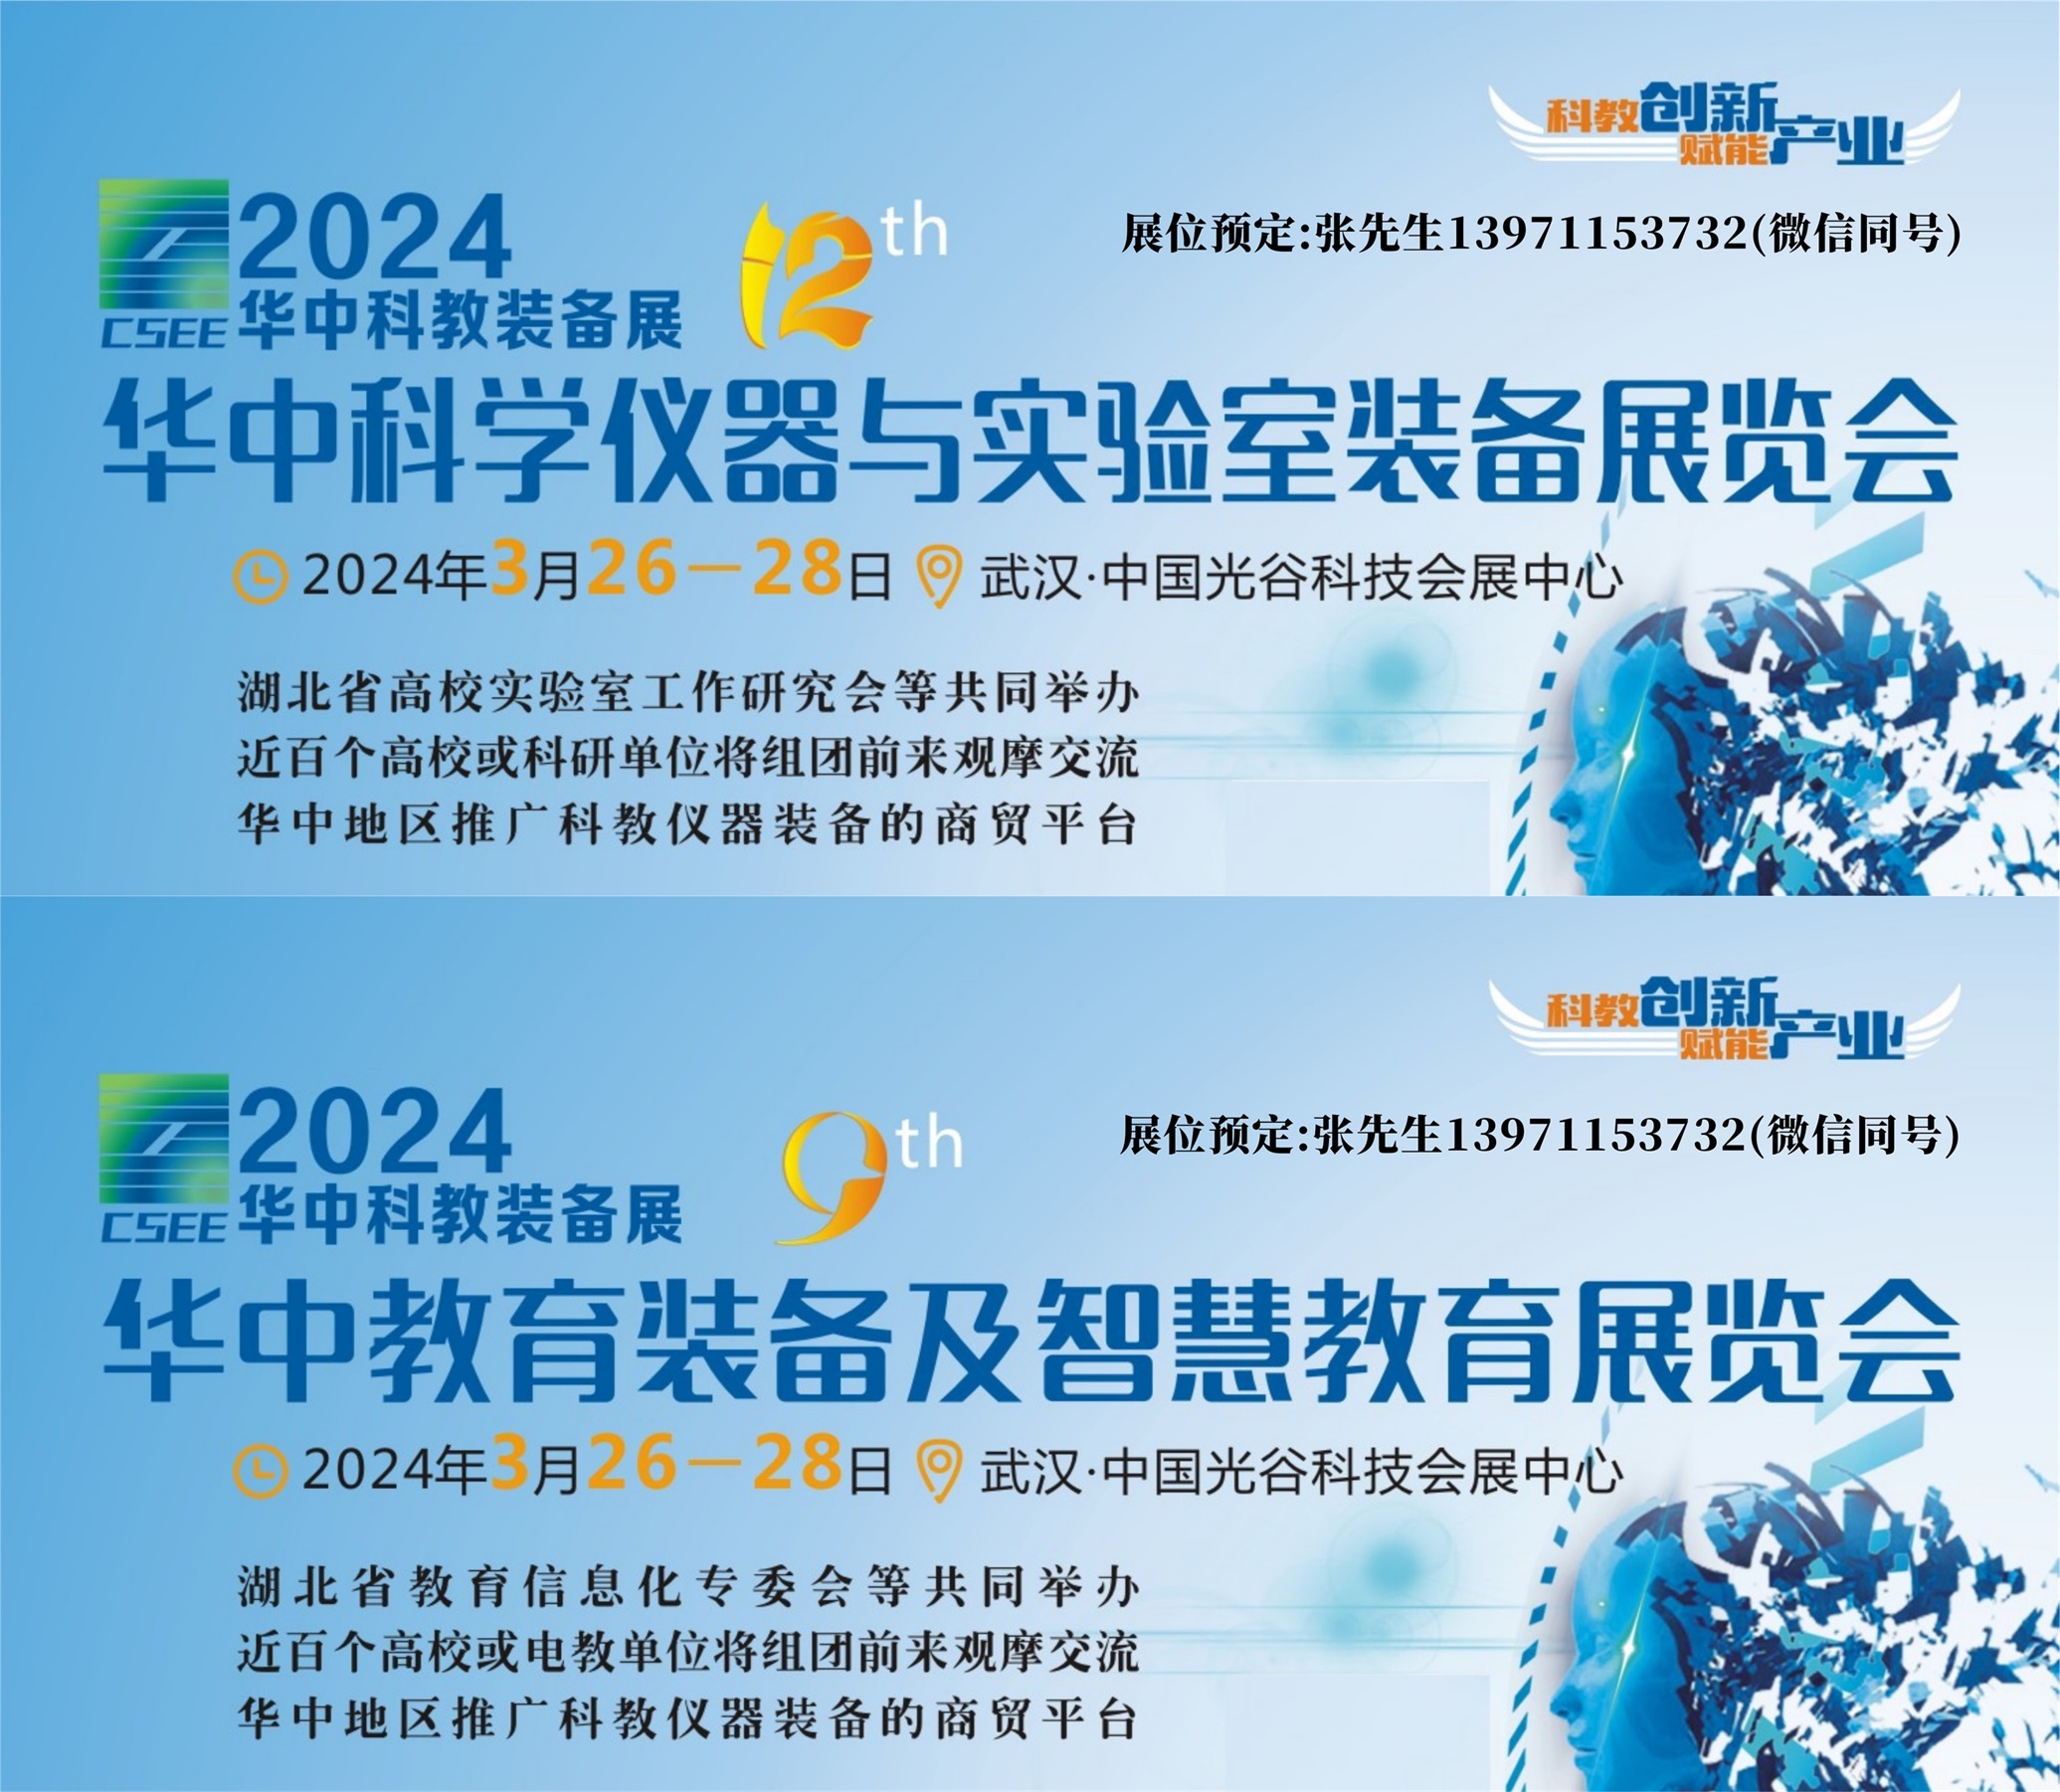 2024武漢科學儀器及智慧教育展宣傳圖.jpg